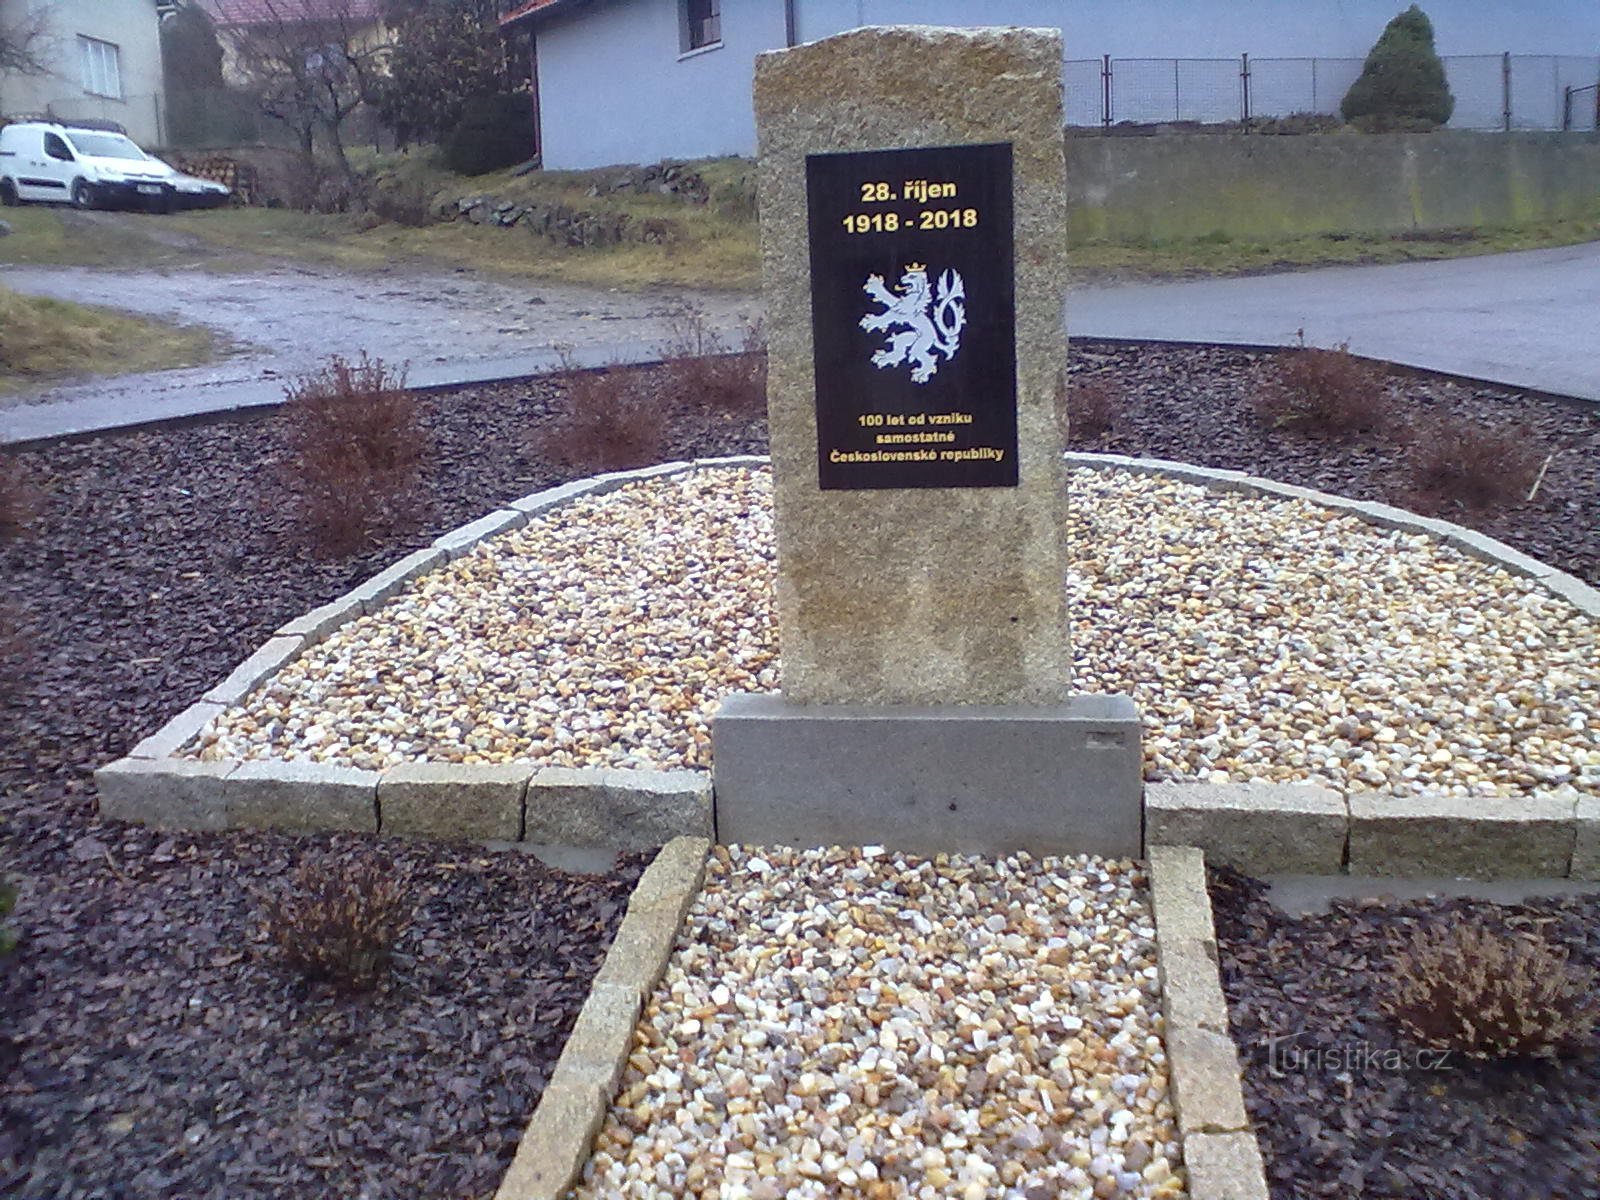 The monument to the establishment of the republic in Vokov.